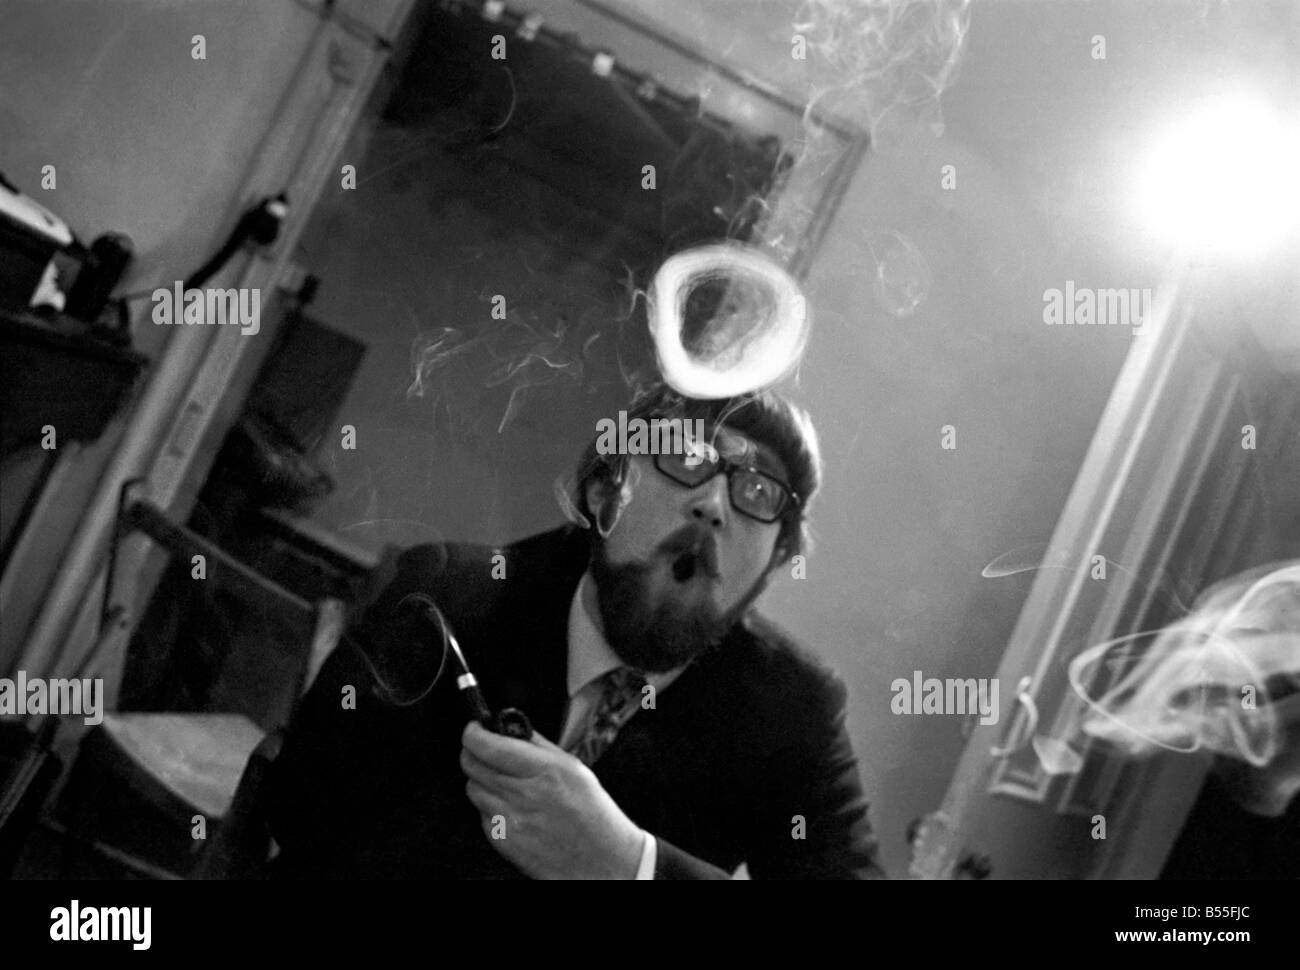 Un homme fume une cigarette soufflant des ronds de fumée. Novembre 1969 &# 13 ;&# 10;Z12004-005 Banque D'Images